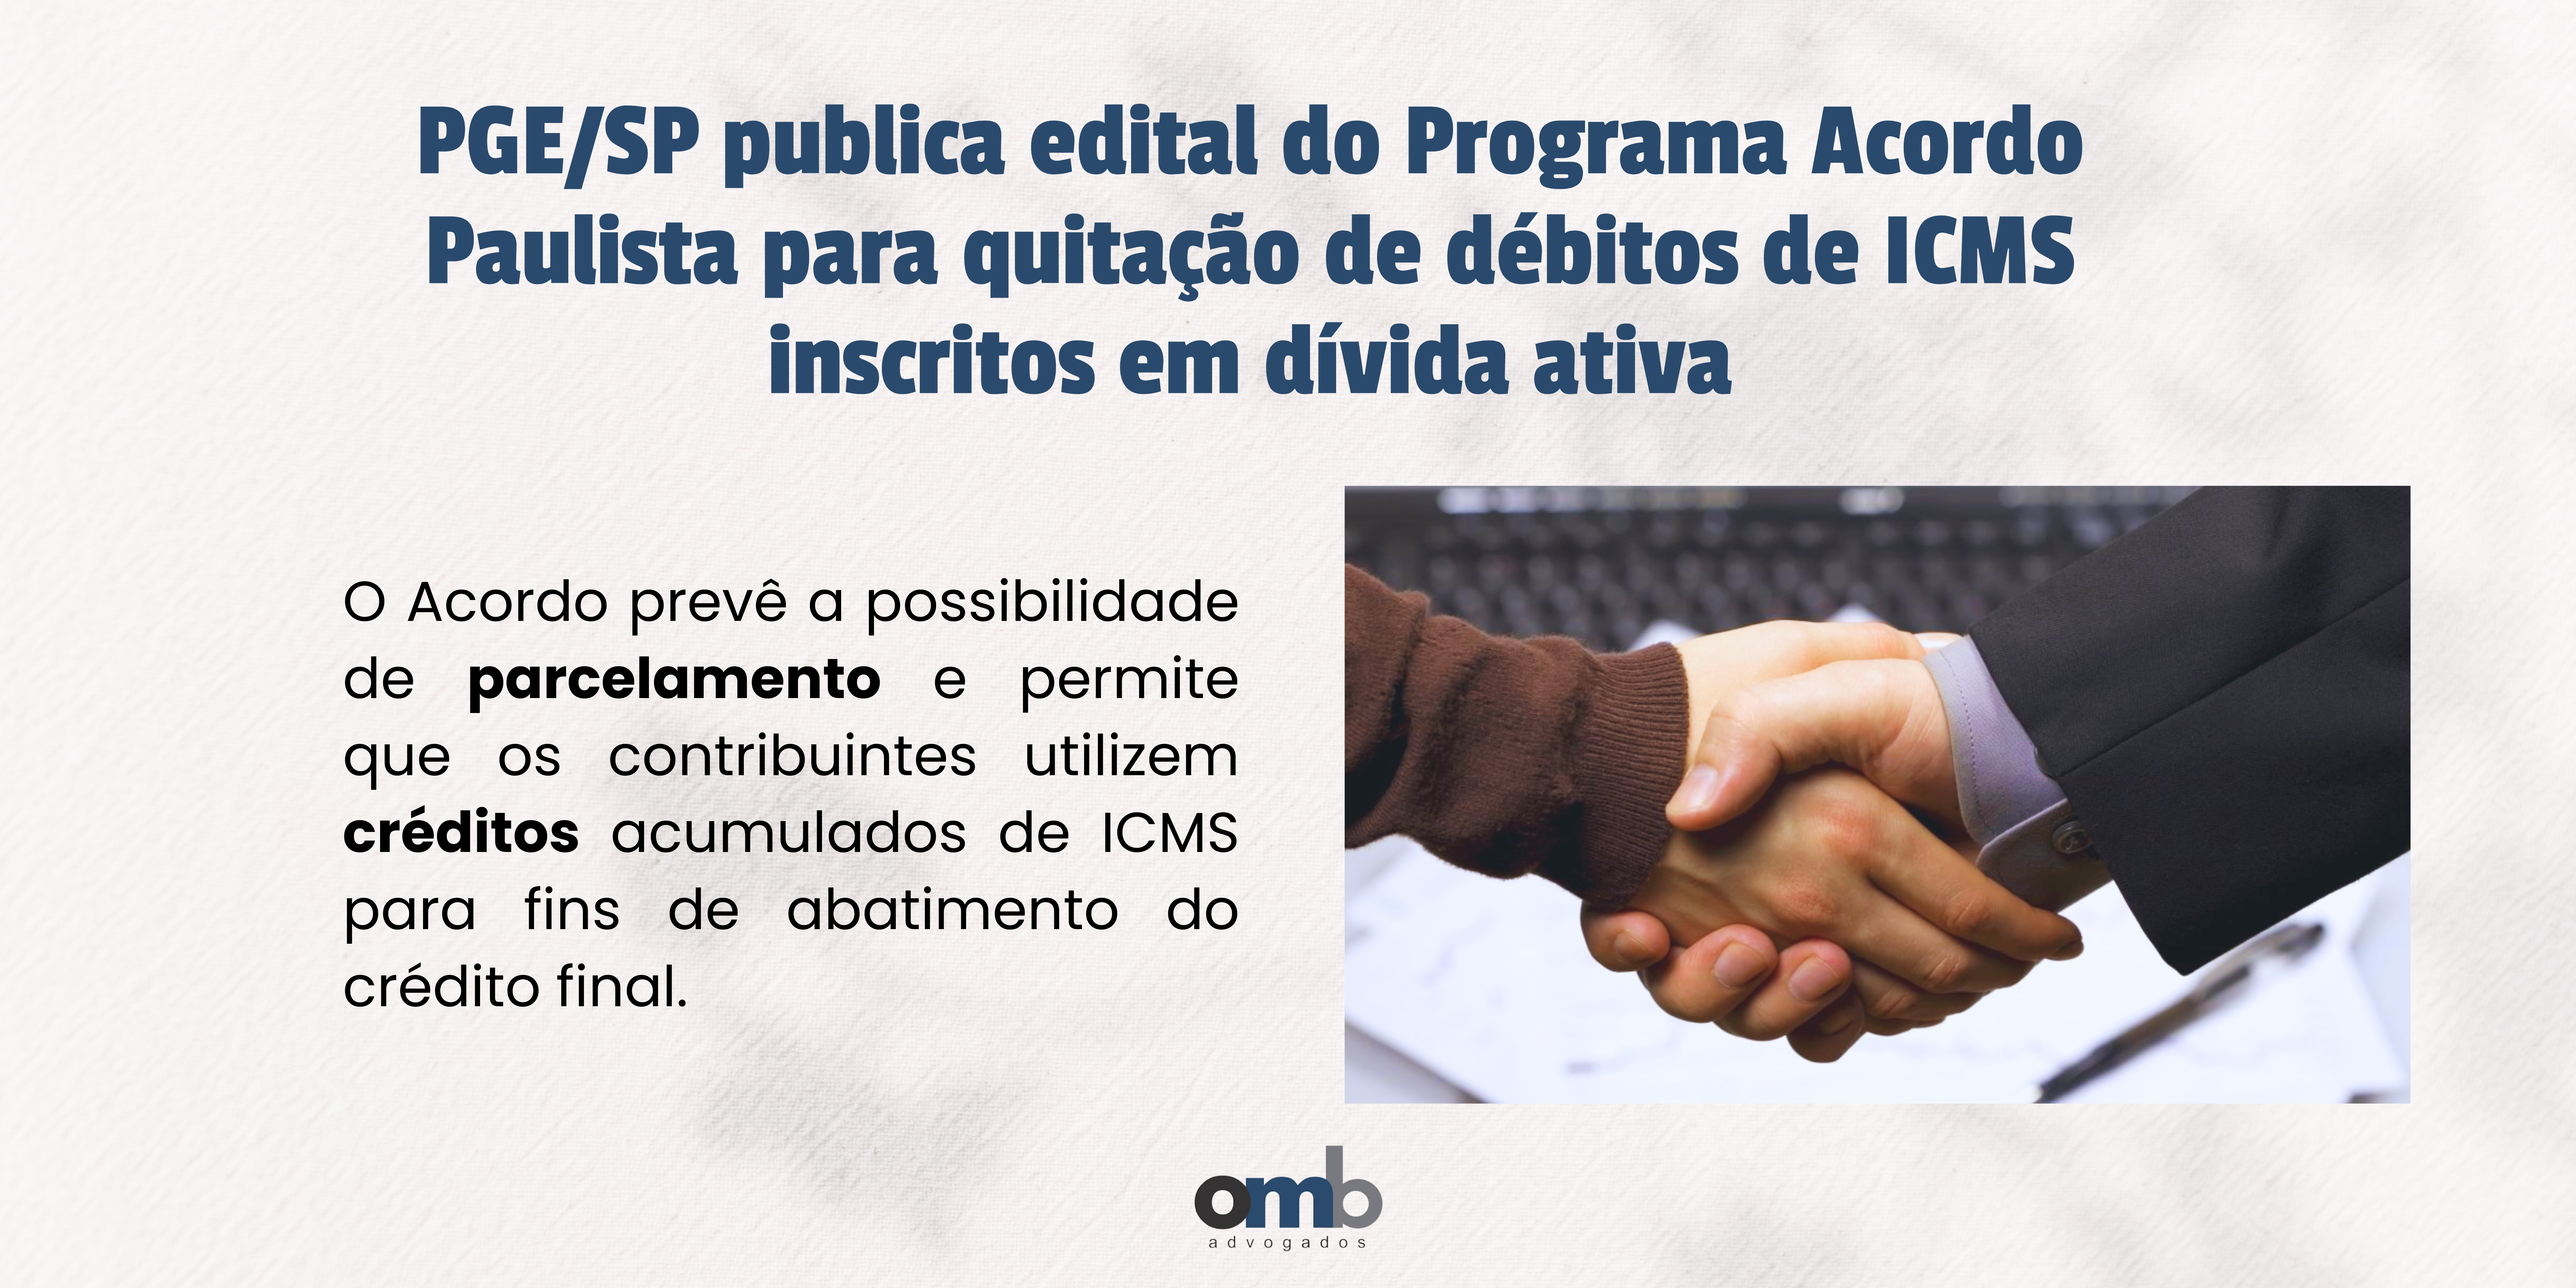 Matéria da OMB Advogados sobre PGE/SP publica edital do Programa Acordo Paulista para quitação de débitos de ICMS inscritos em dívida ativa